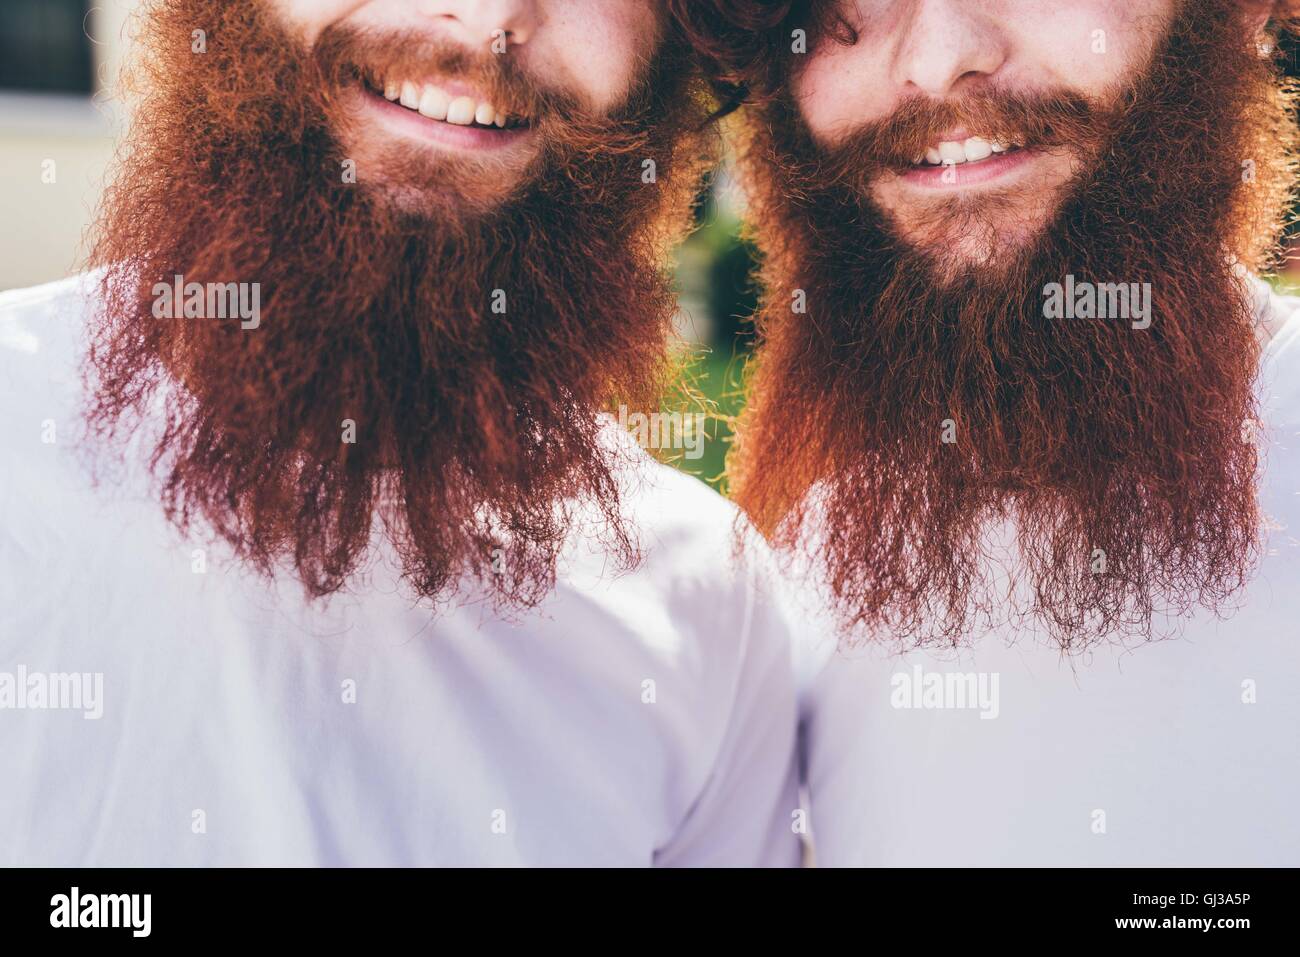 Porträt des jungen männlichen Hipster Zwillinge mit roten Bärten tragen weiße t-Shirts beschnitten Stockfoto